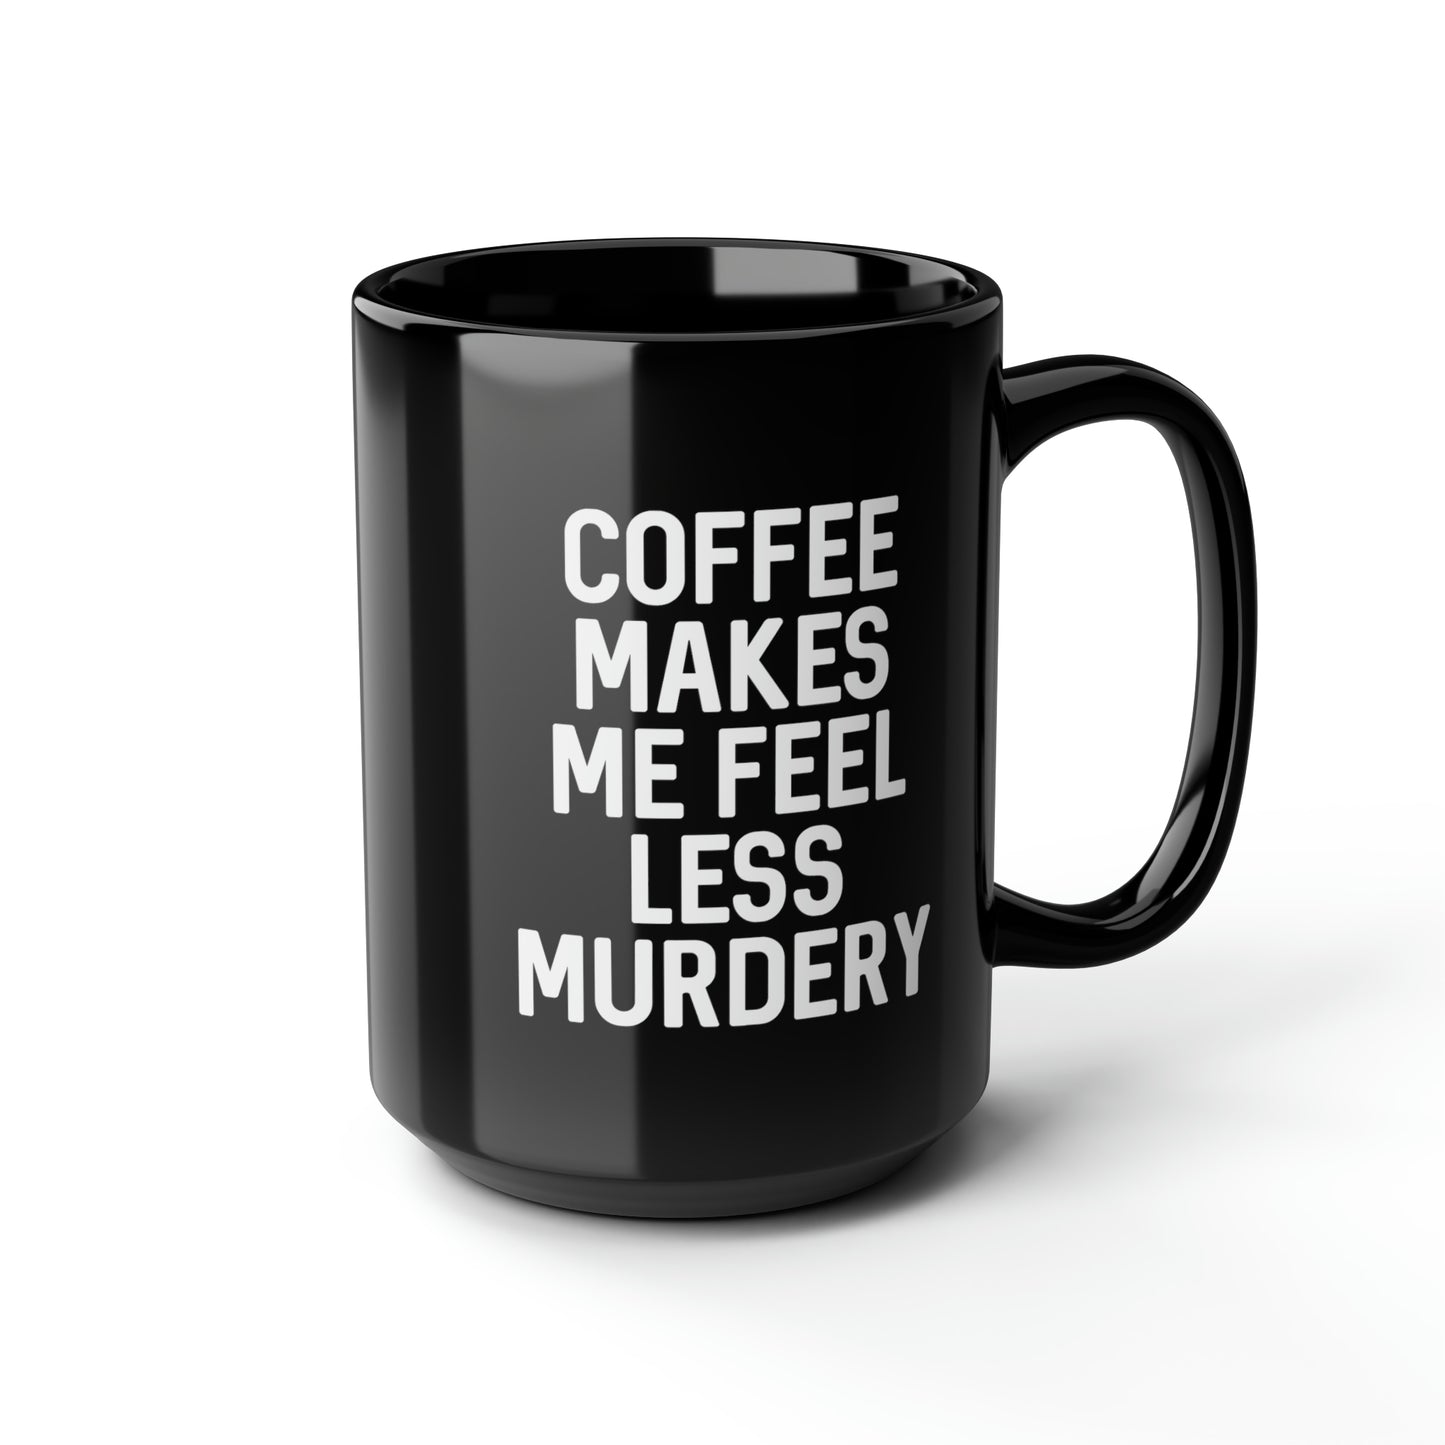 Murdery Mug 15oz